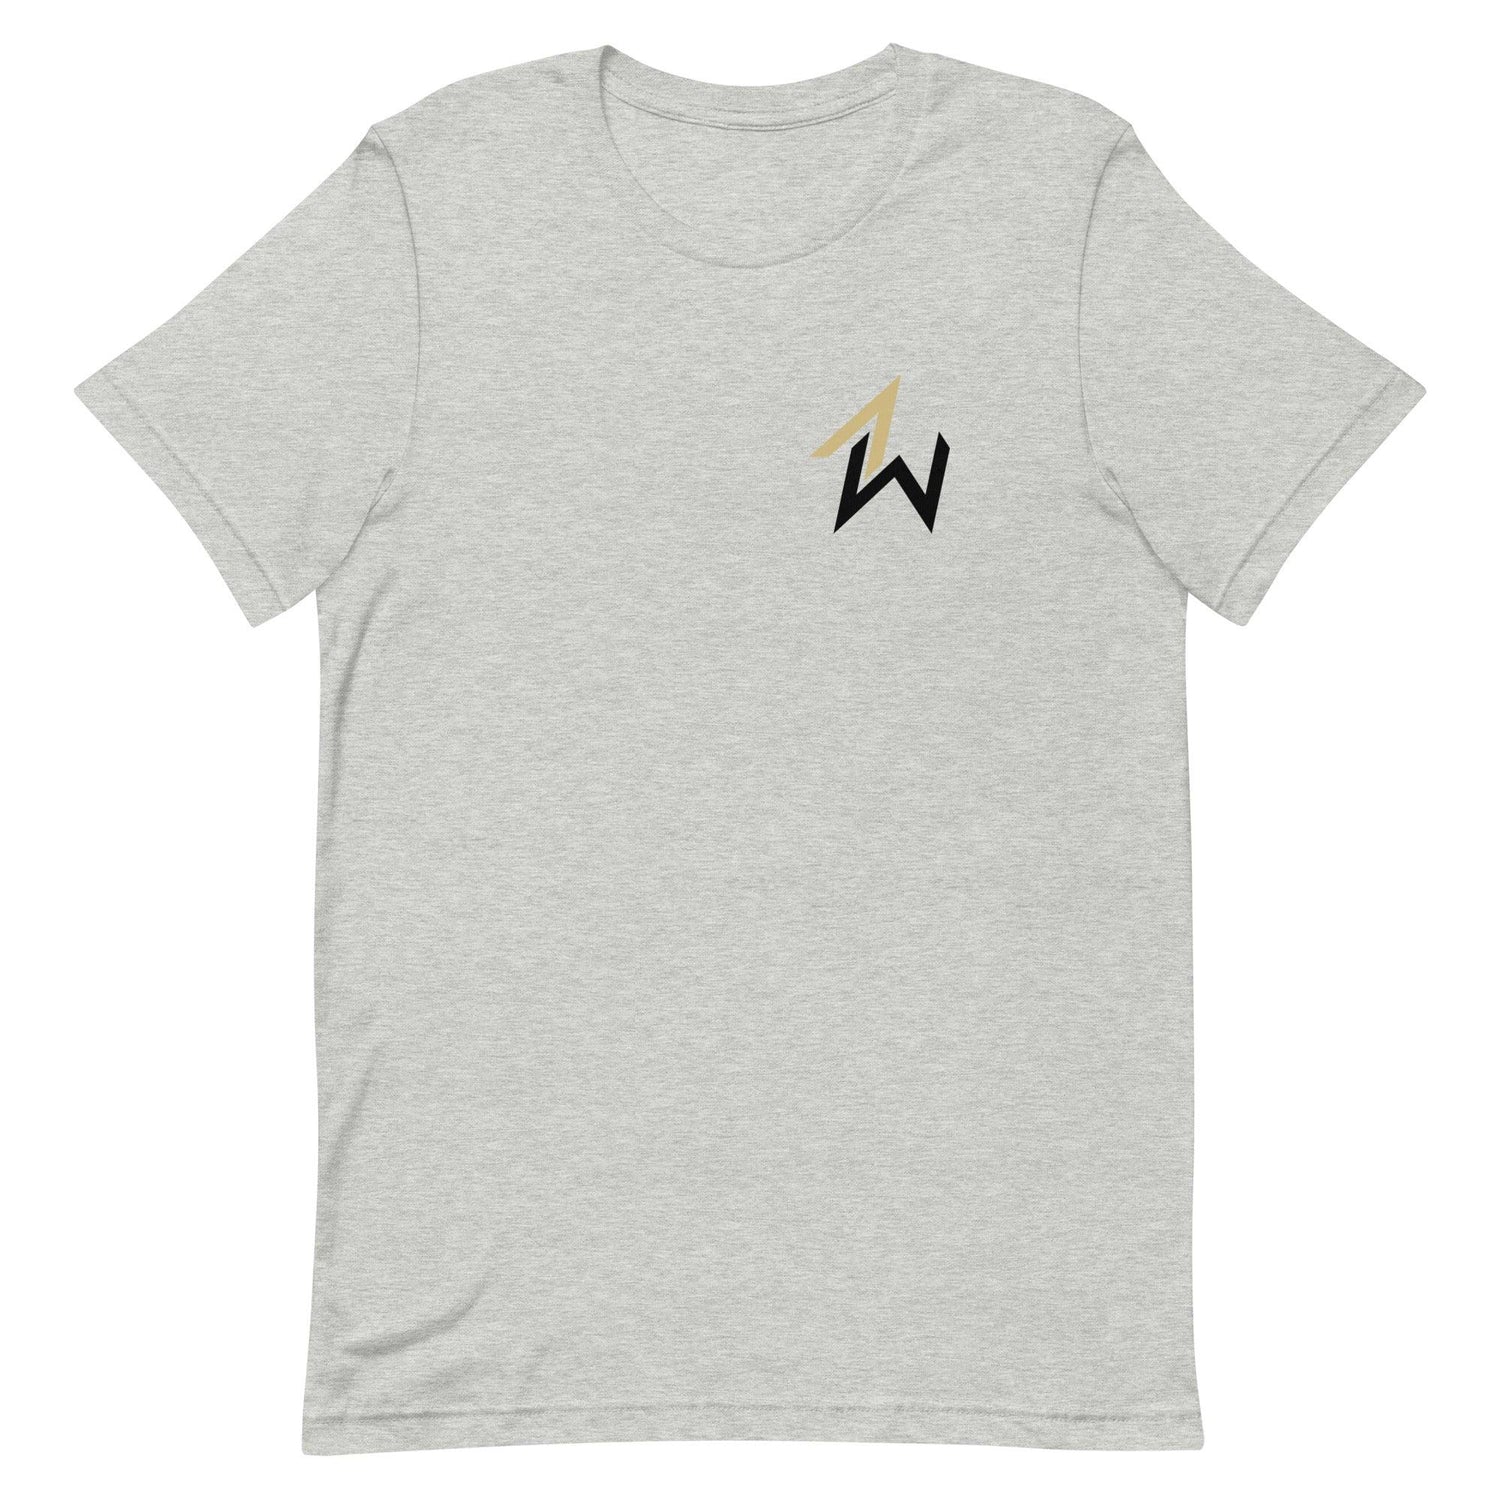 Austin Williams "Essential" t-shirt - Fan Arch